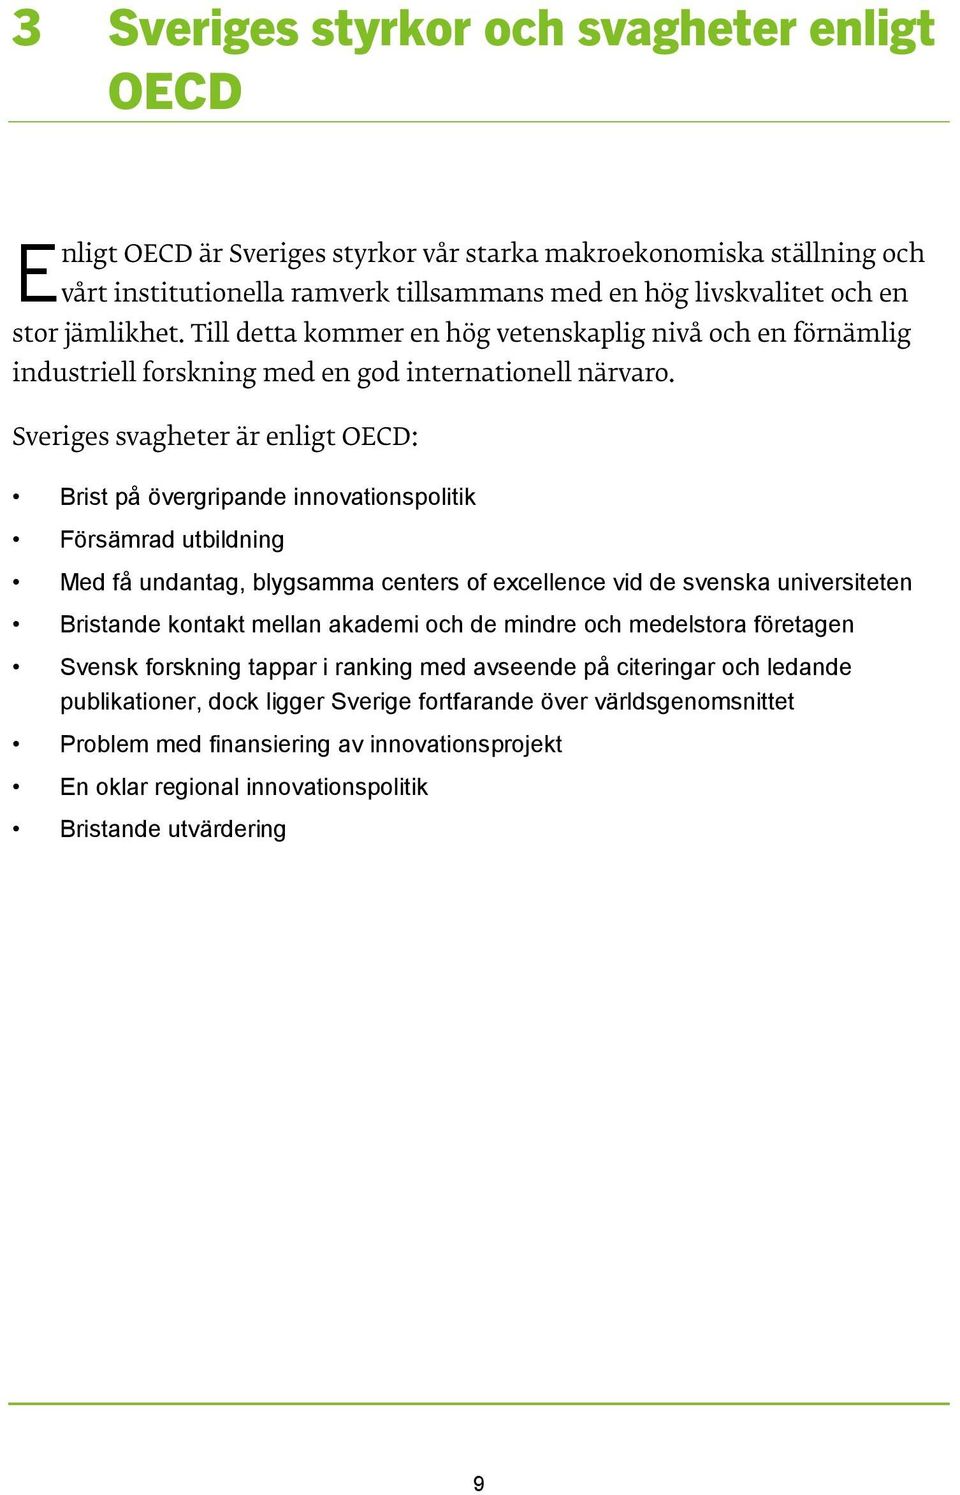 Sveriges svagheter är enligt OECD: Brist på övergripande innovationspolitik Försämrad utbildning Med få undantag, blygsamma centers of excellence vid de svenska universiteten Bristande kontakt mellan